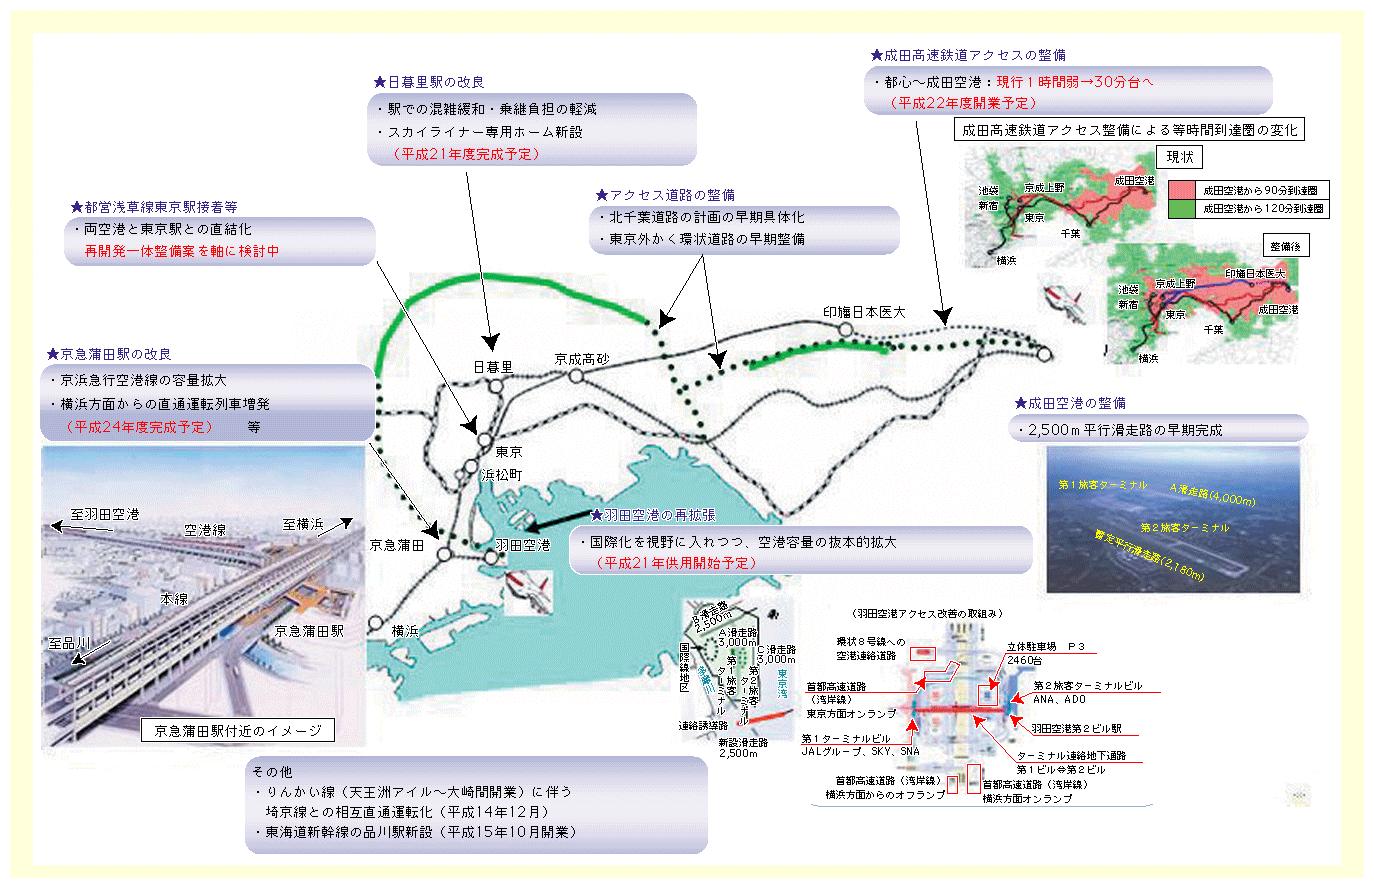 図表II-5-3-4　首都圏空港への交通アクセス強化